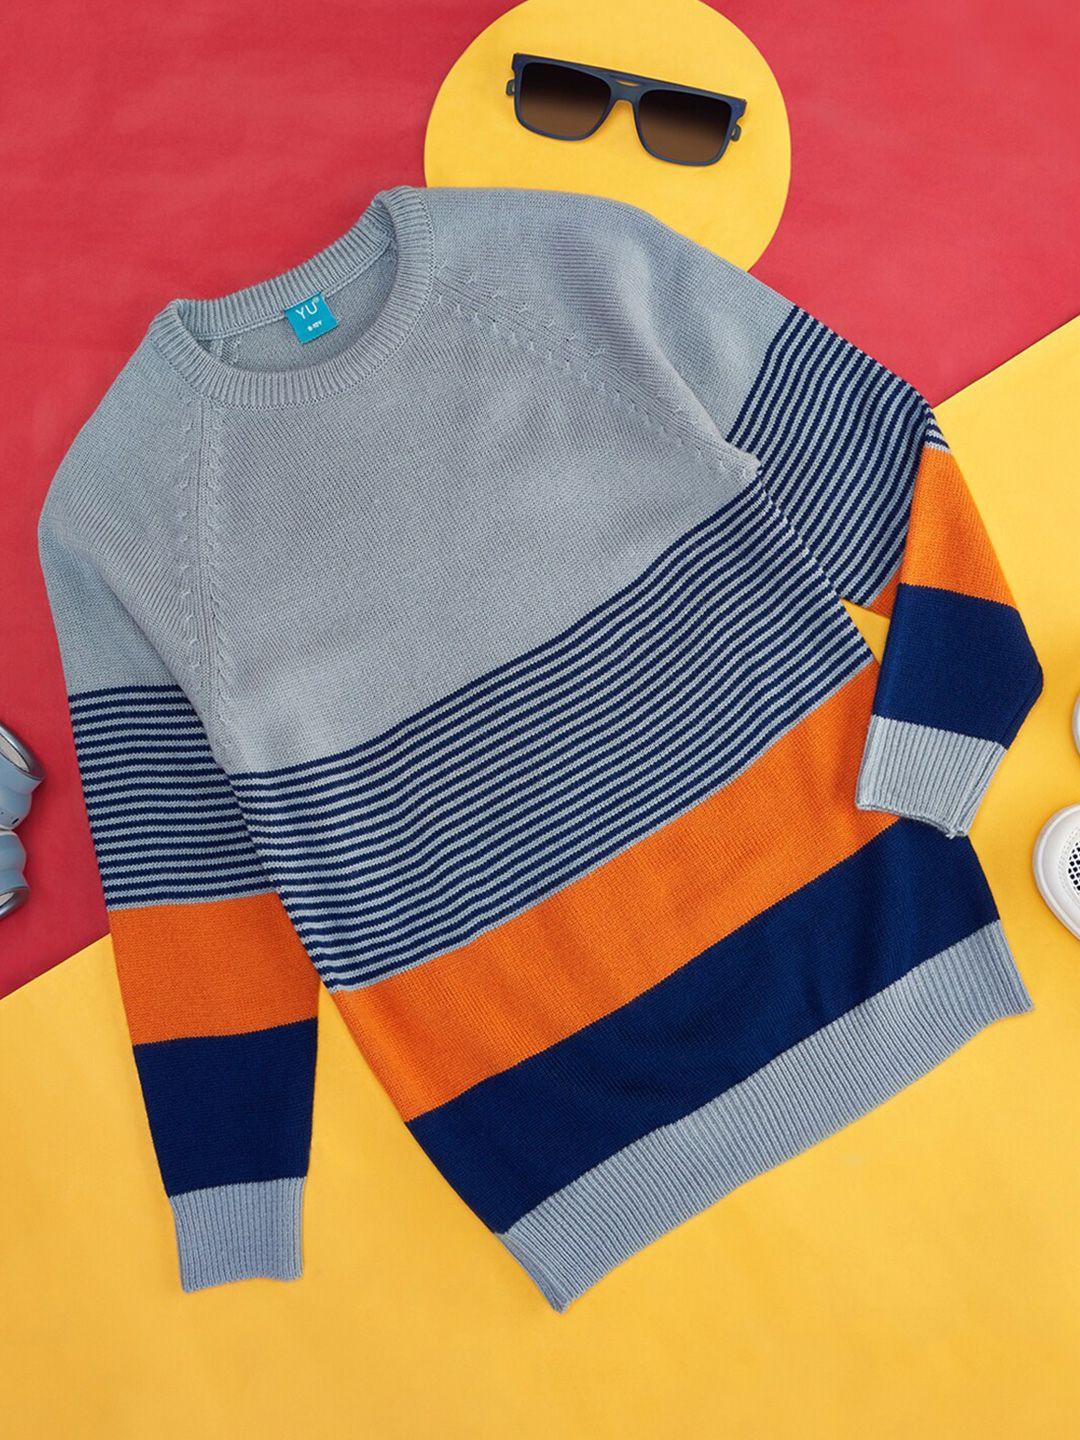 yu-by-pantaloons-boys-colourblocked-acrylic-pullover-sweaters